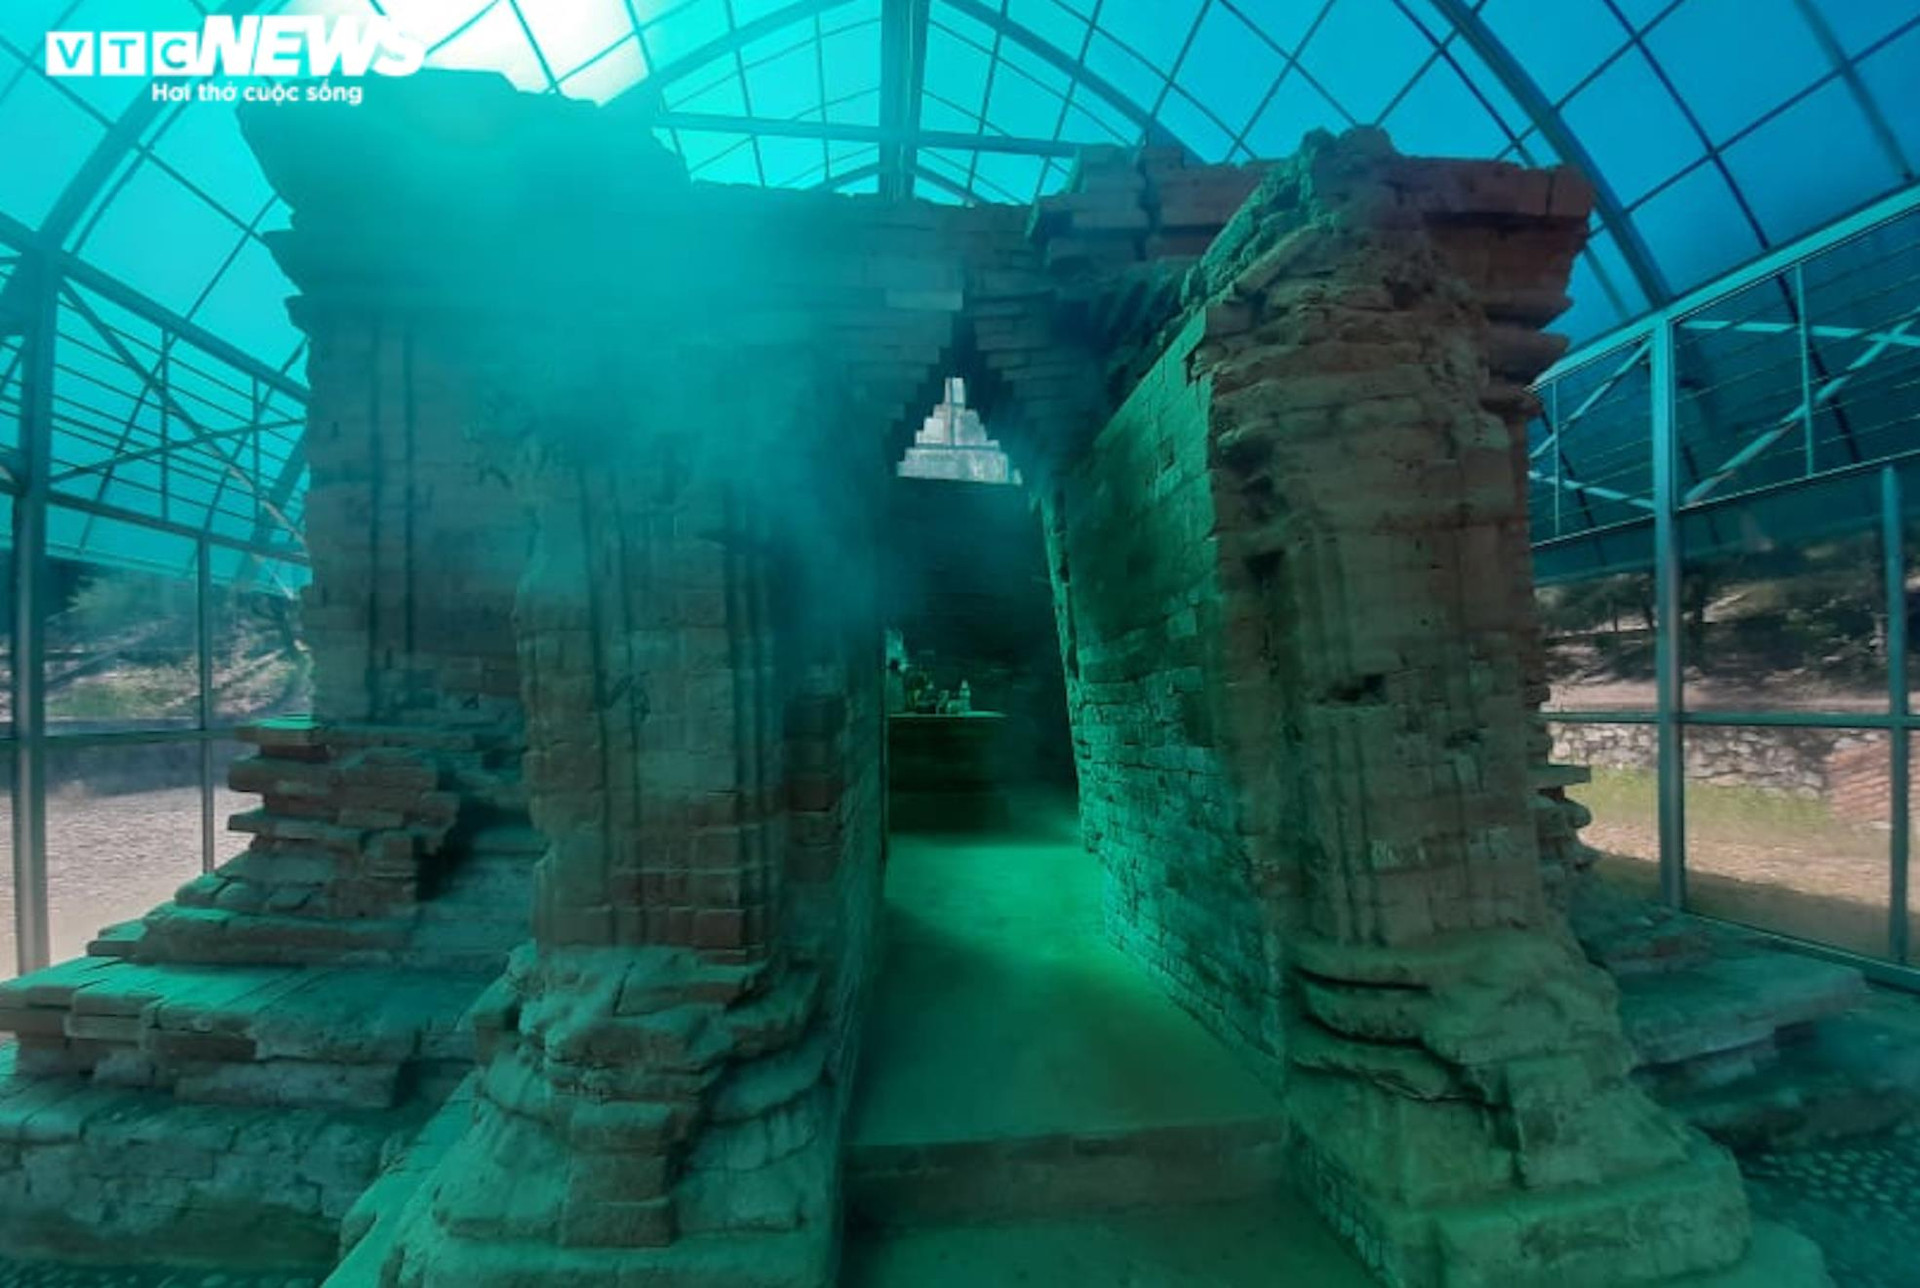 Bên trong tháp cổ chôn sâu dưới lòng đất được công nhận kỷ lục thế giới ở Huế - 6